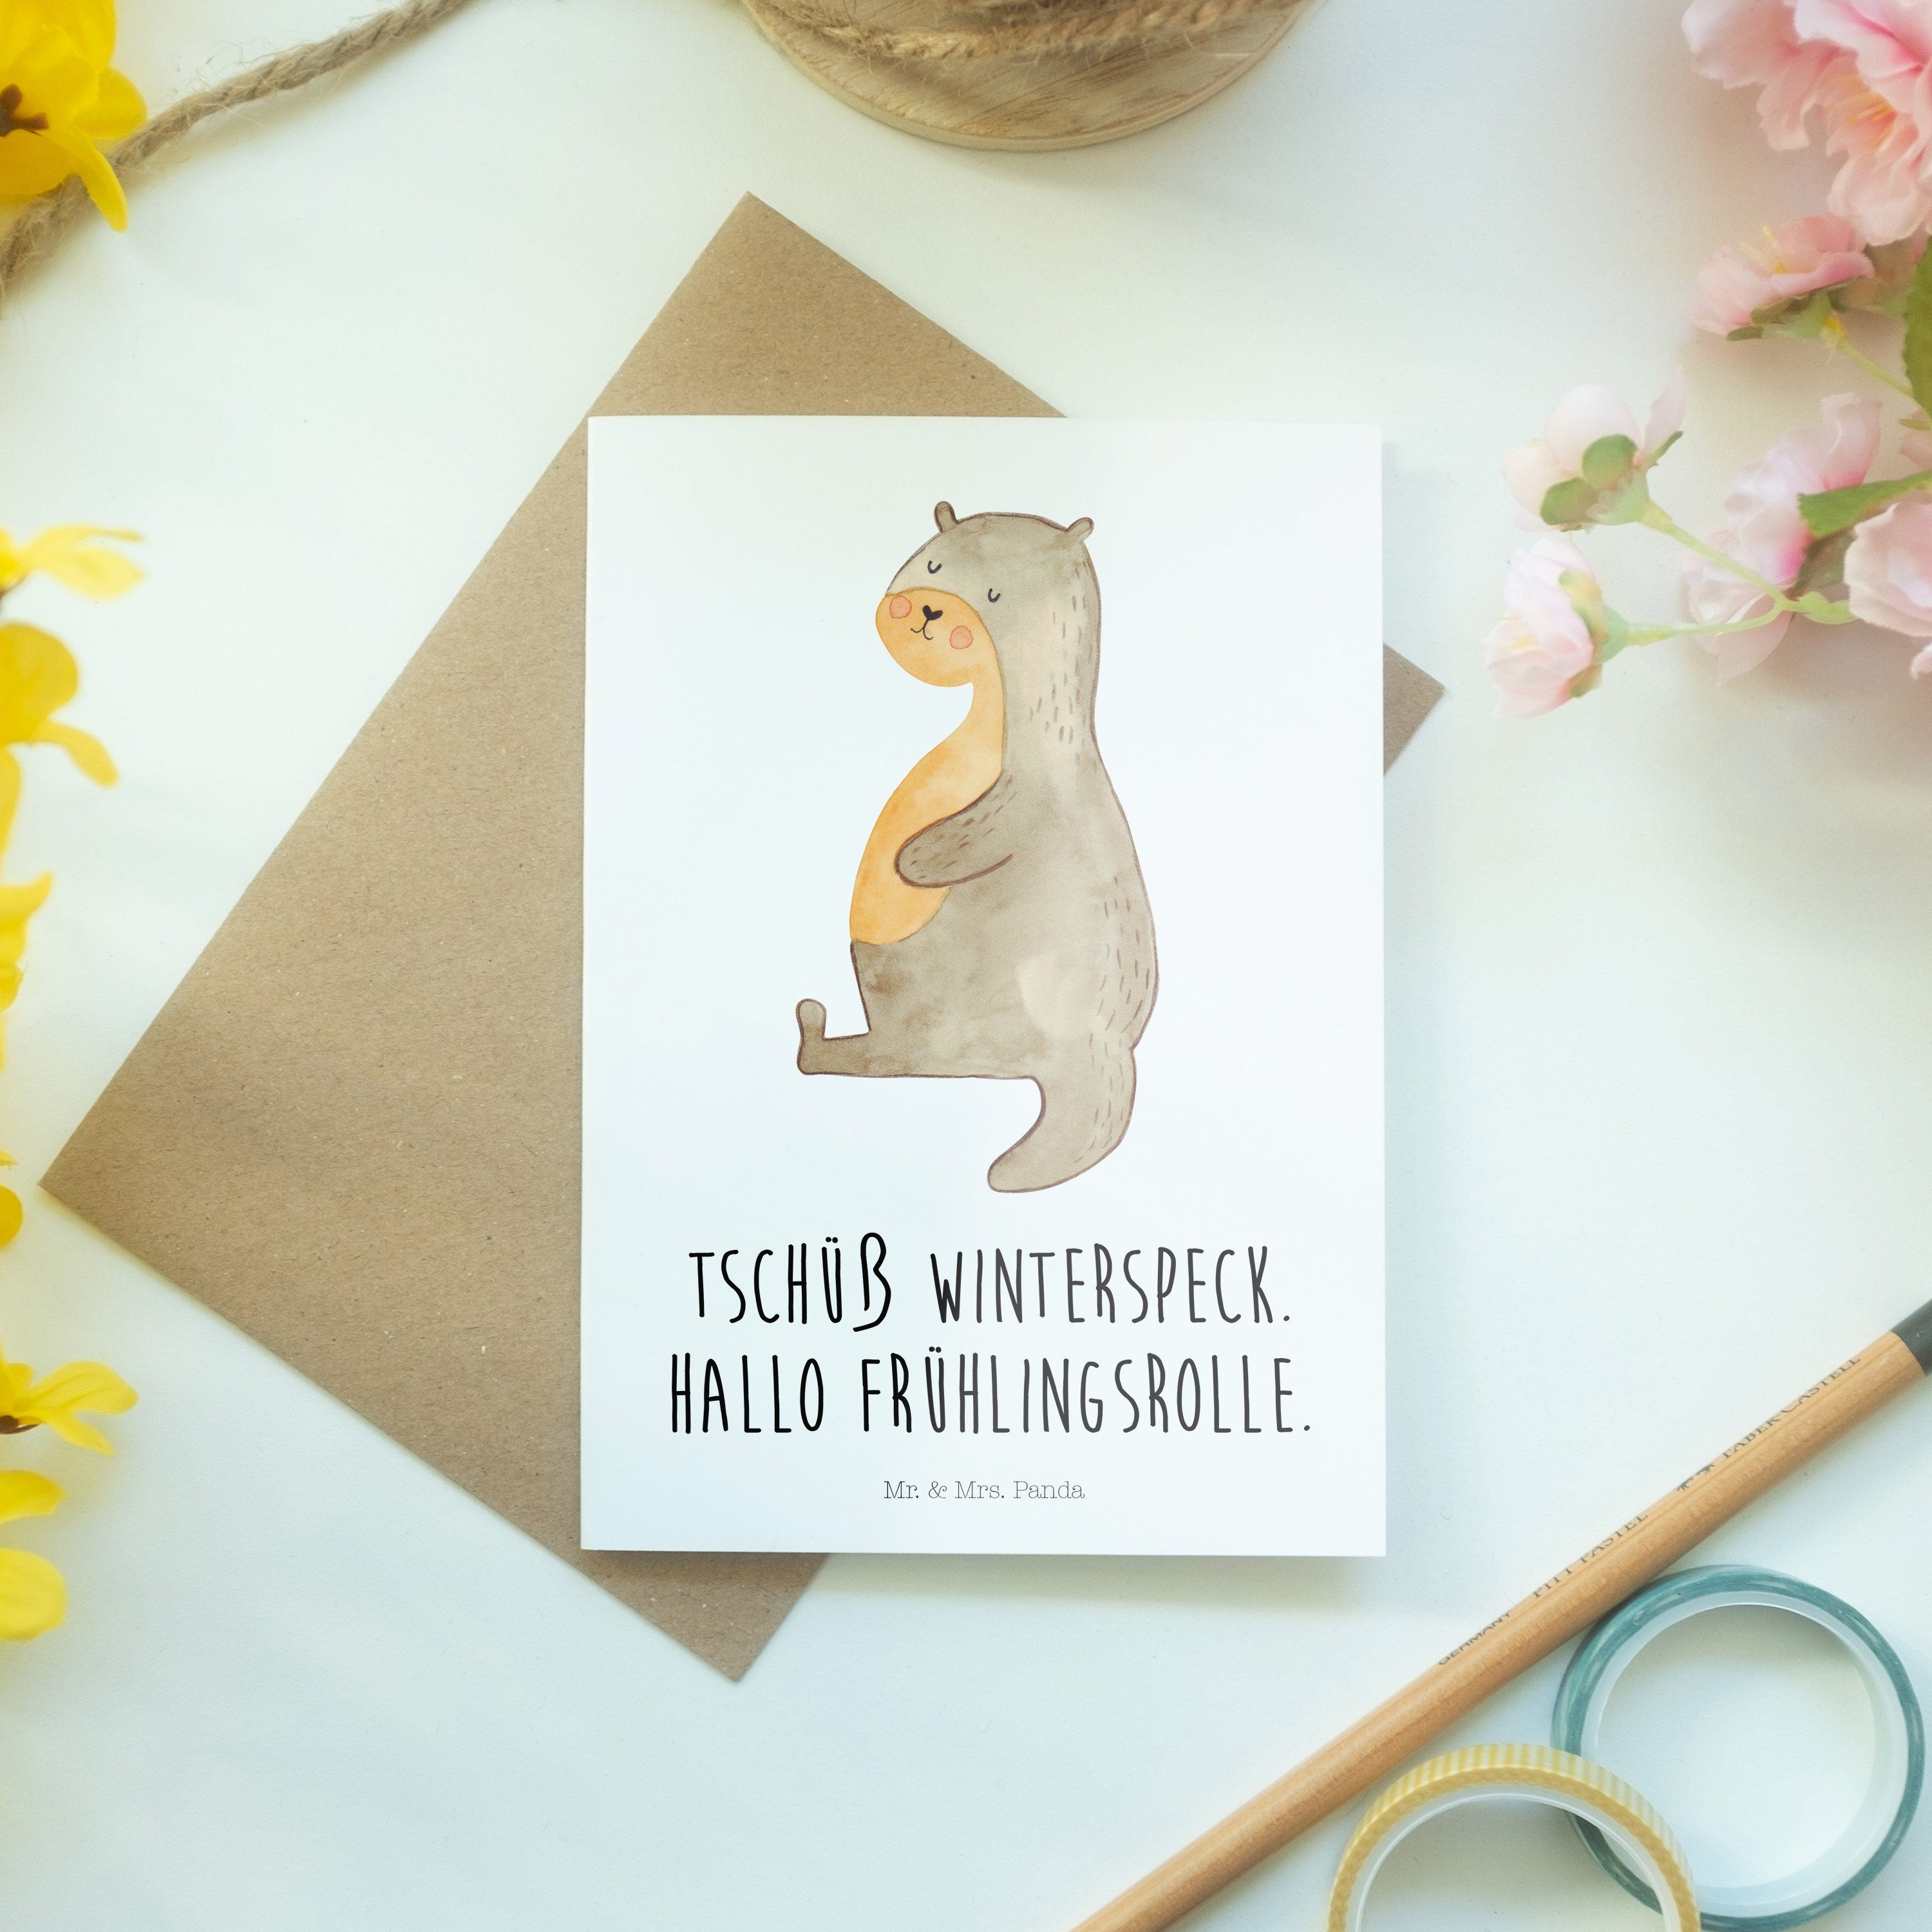 Mr. & Mrs. Panda Otter - Bauch Geschenk, Hochzeitskarte, - Weiß Karte, Grußkarte Glückwunschkart